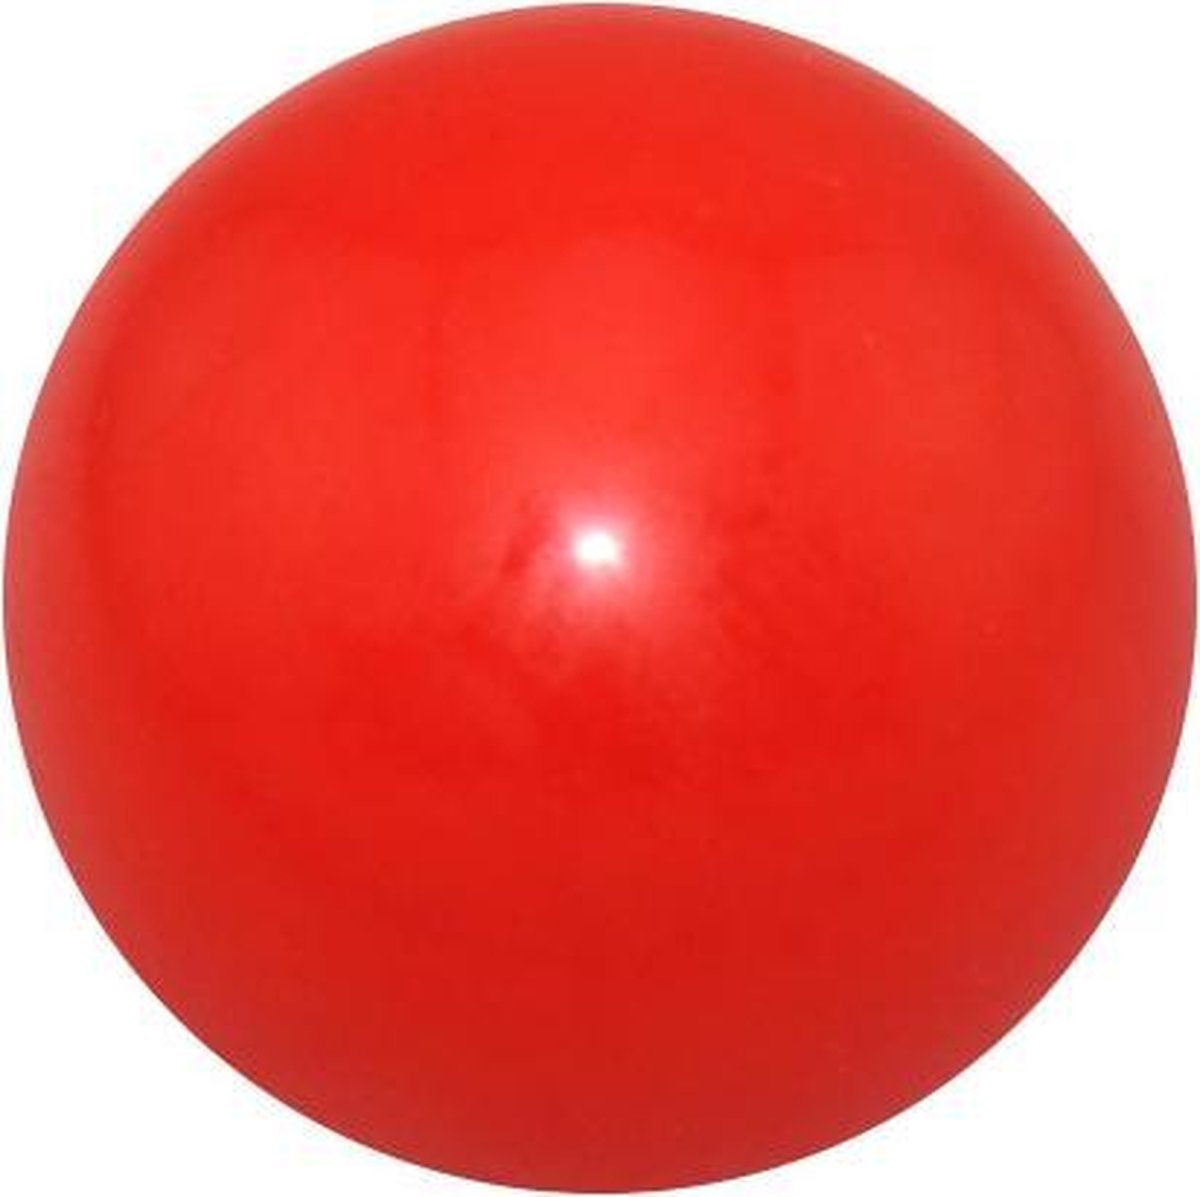 Een solide rubberen rode bal. bol.com